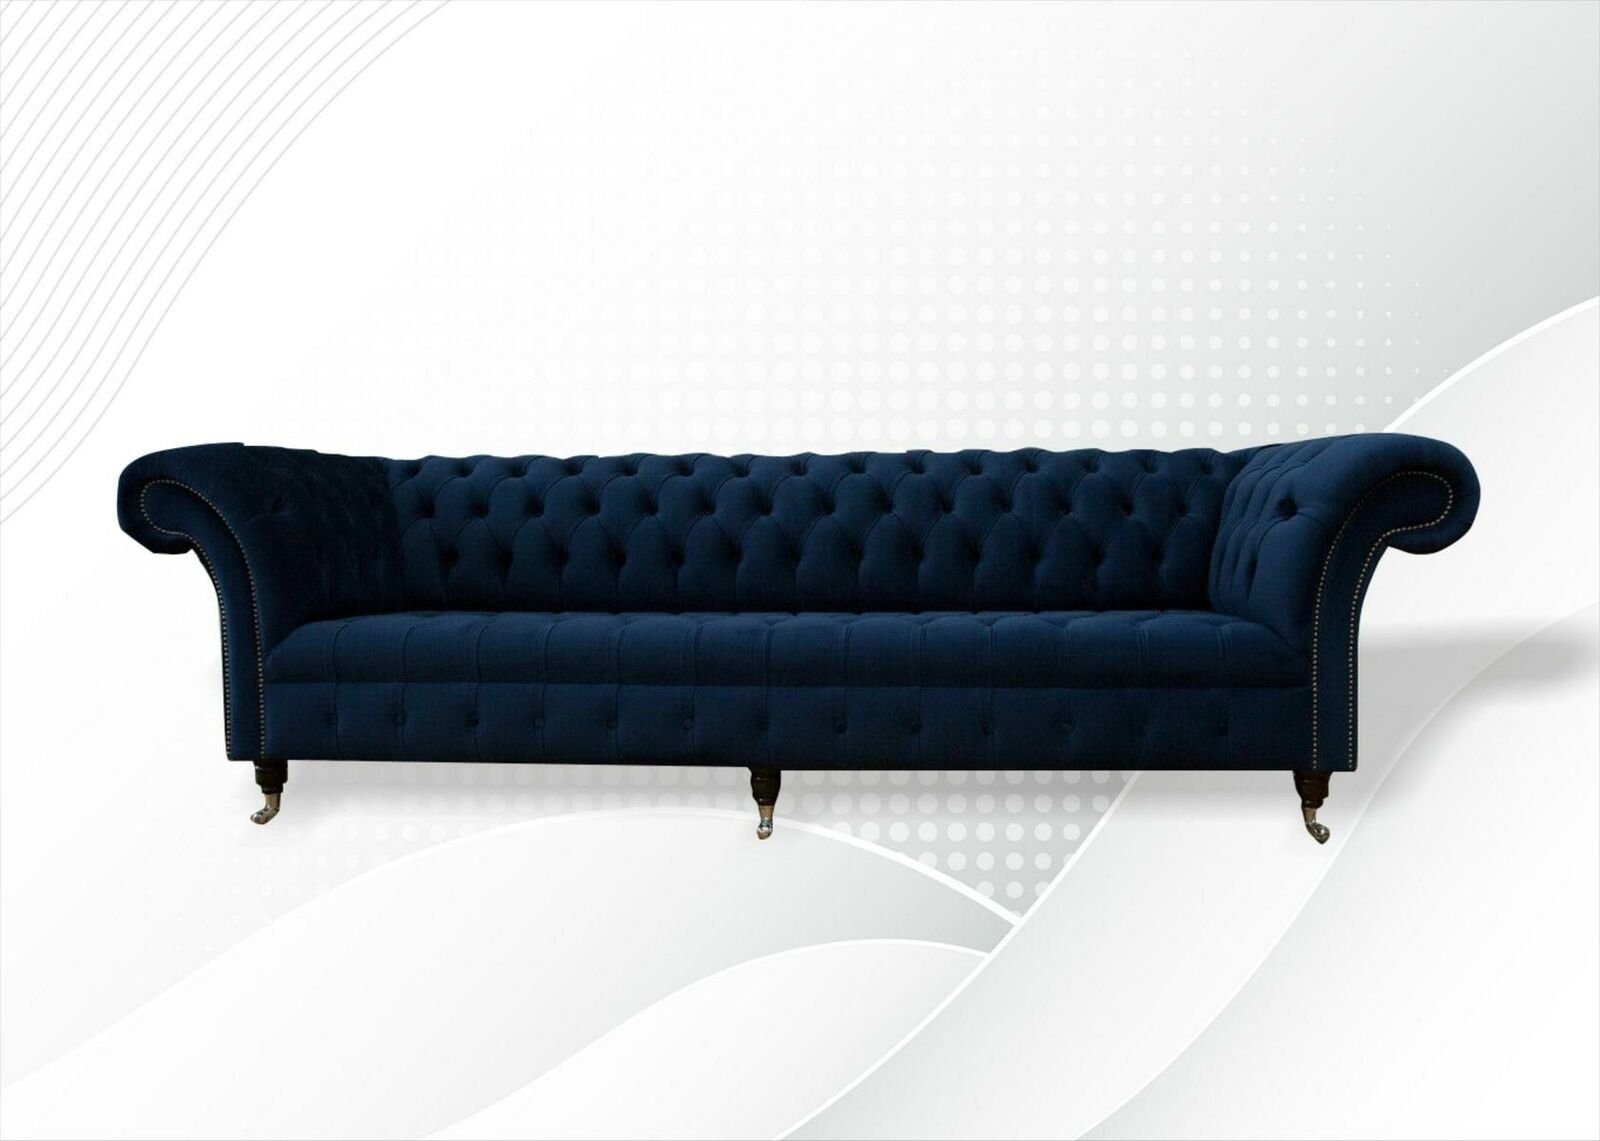 JVmoebel Chesterfield-Sofa Dunkelblauer 4-Sitzer luxus Chesterfield Möbel Neu, Made in Europe